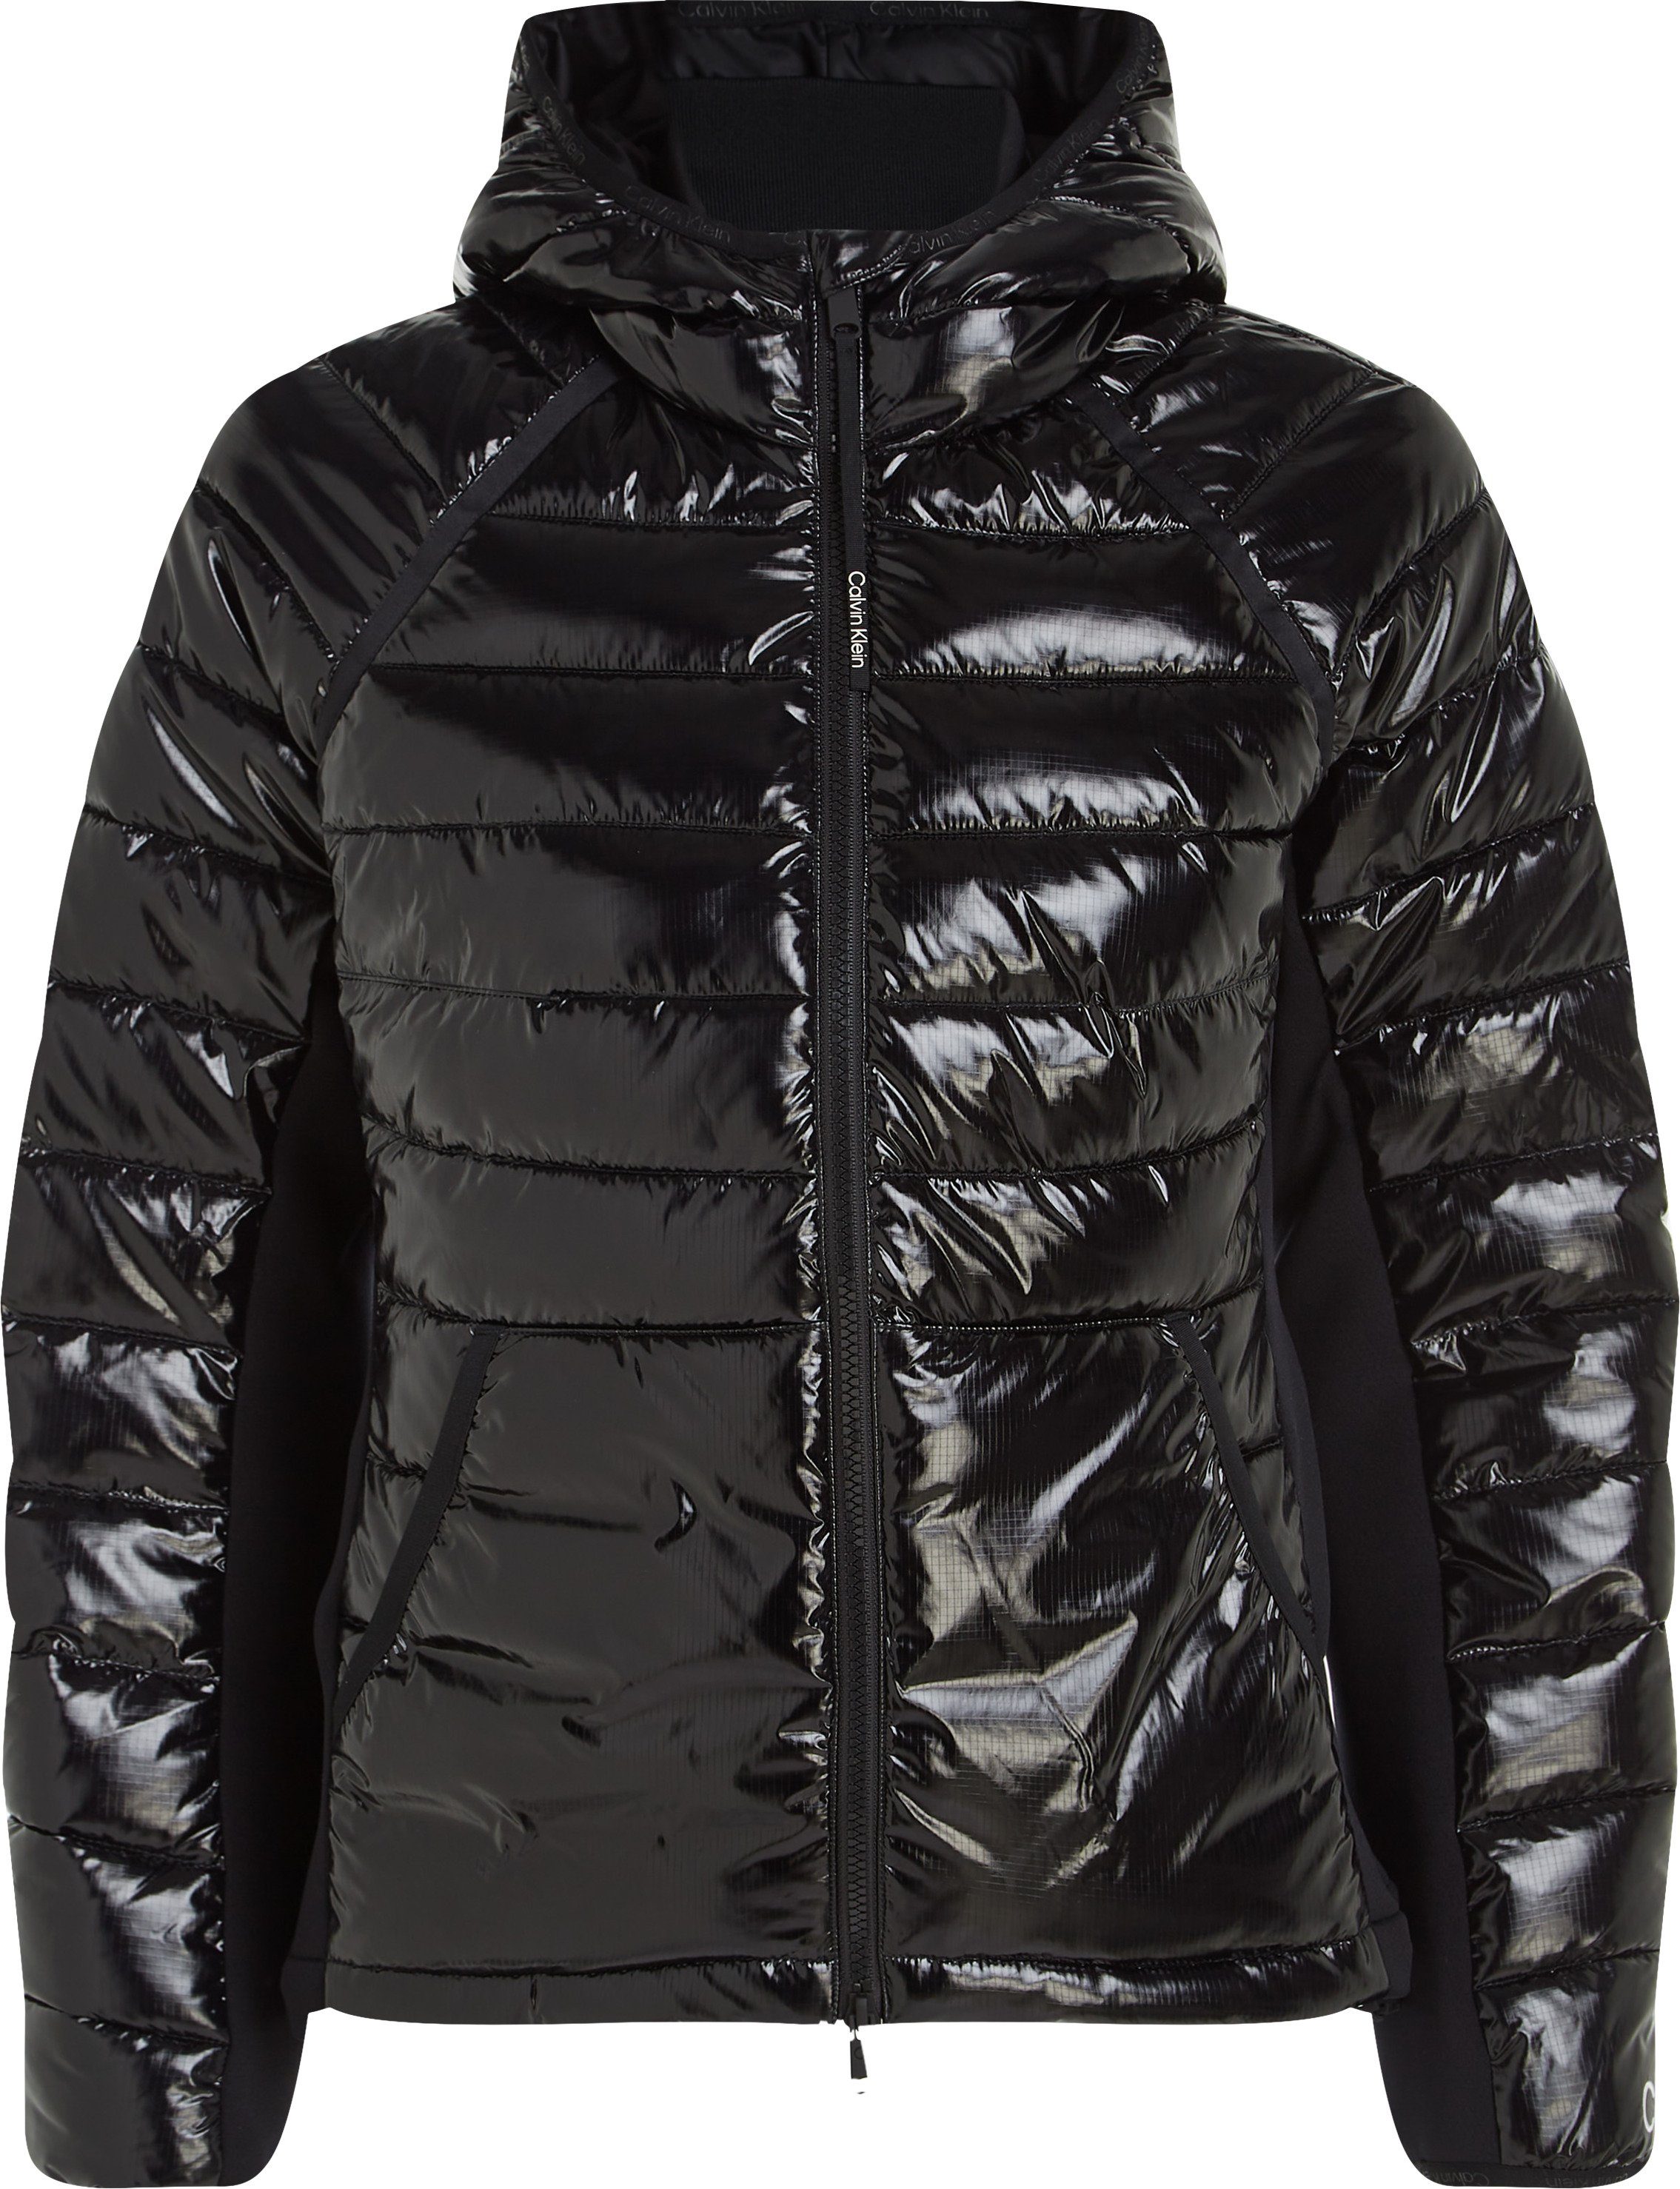 Calvin Klein Sport Winterjacke PW - Jacket Padded